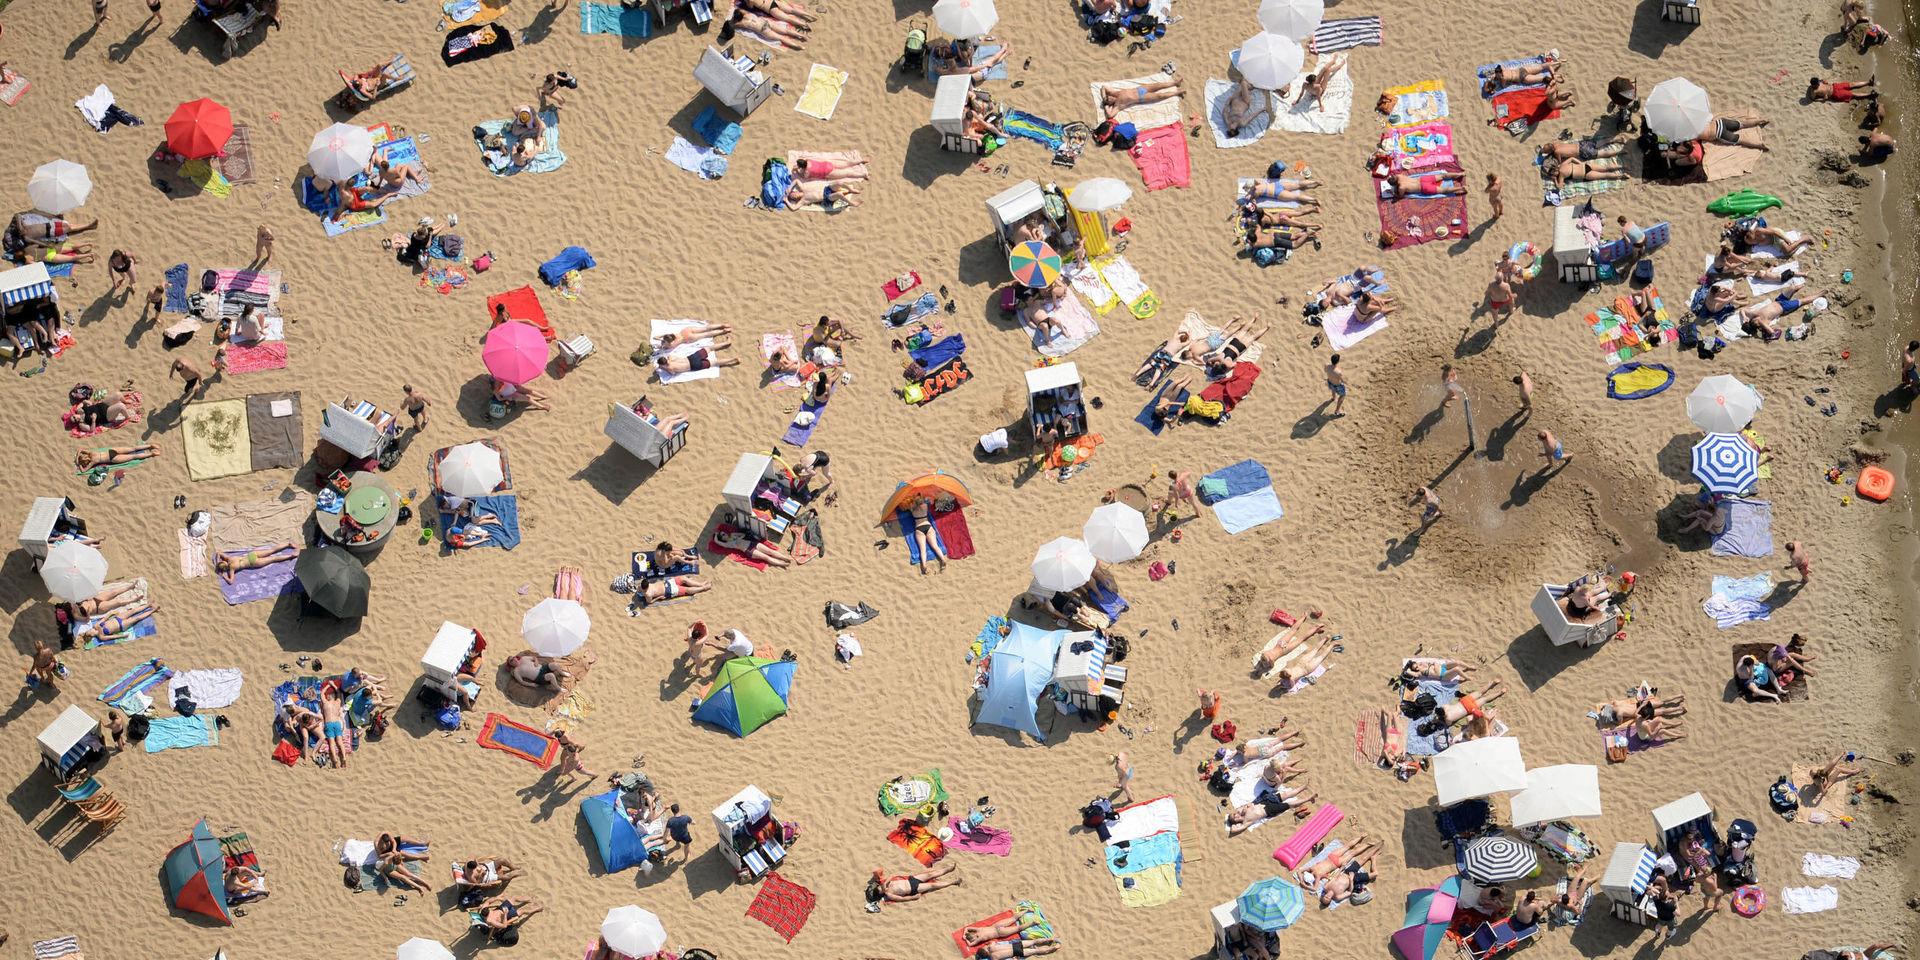 En varm sommardag kan det vara välfyllt på sandstränderna. Hur ska coronasmittan hindras där? undrar insändarskribenten. (Bilden är från en strand i Berlin).